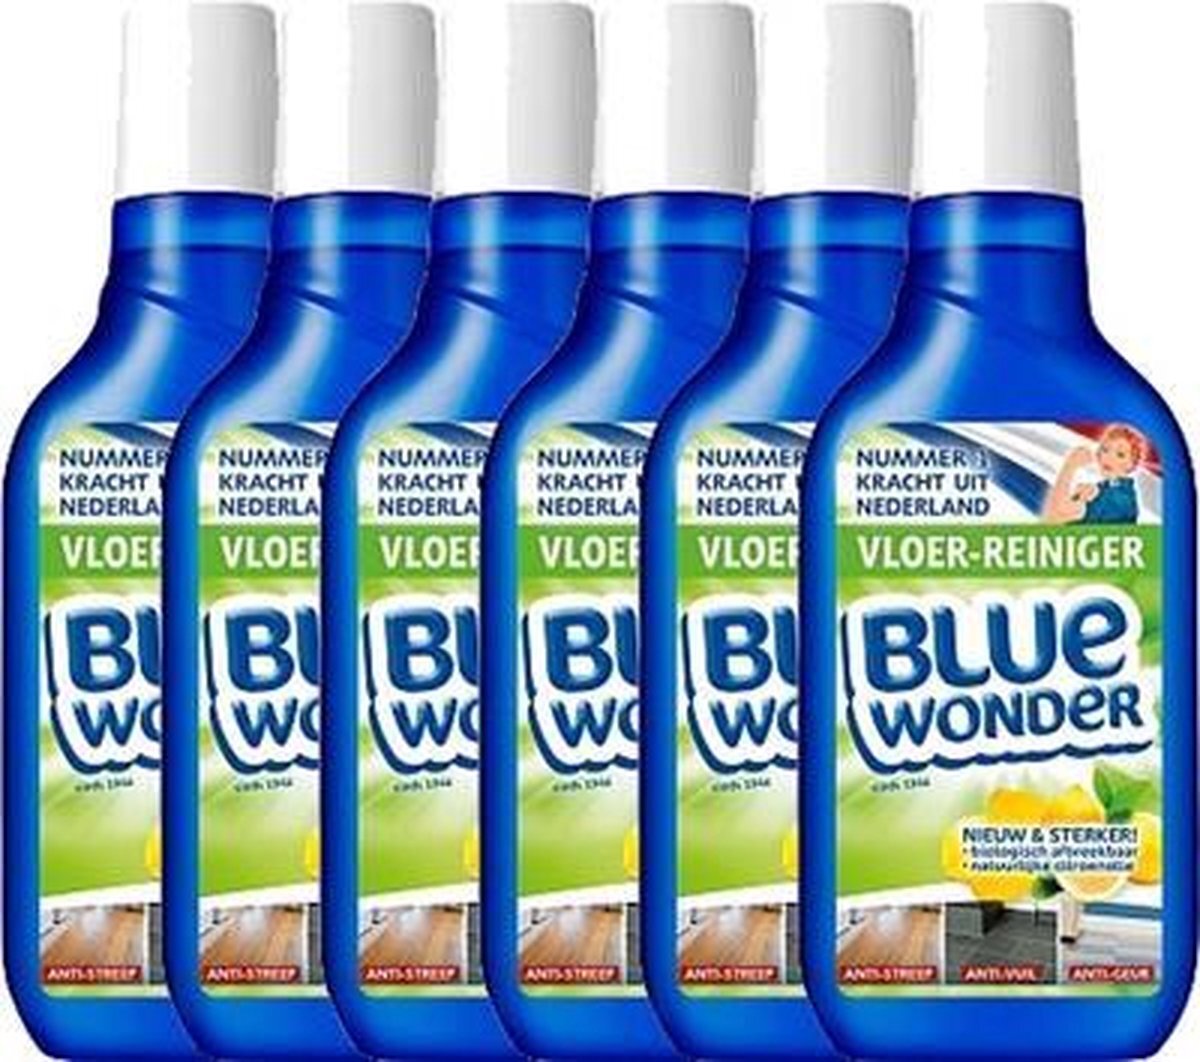 Blue Wonder Vloer-reiniger Fles met Dop Voordeelverpakking - 6 x 750 ml